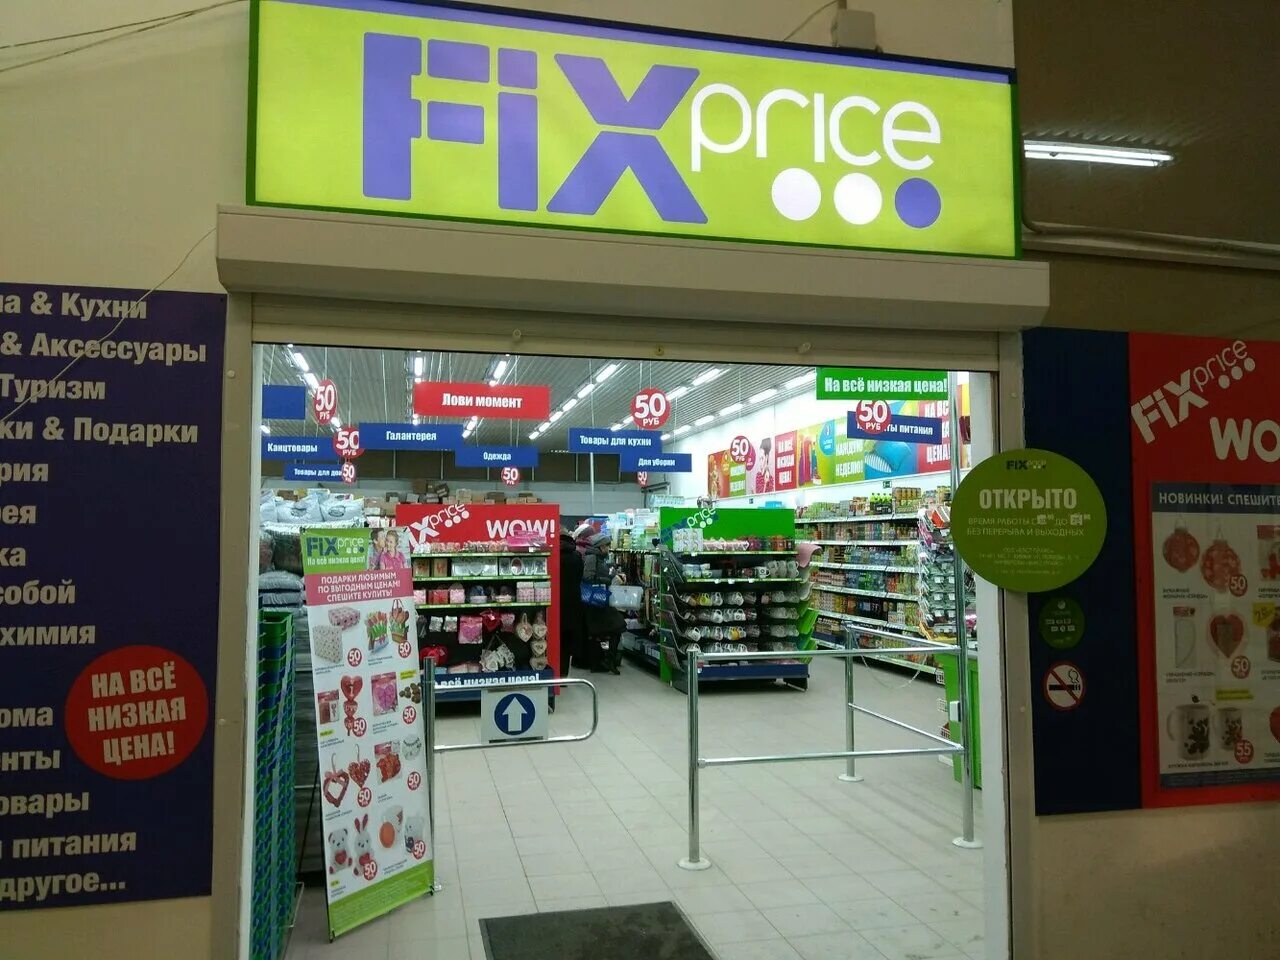 Фикс прайс войти. Магазин Fix Price. Fix Price магазин картинки. Внутри магазин Fix Price. Магазин Fix Price рядом.